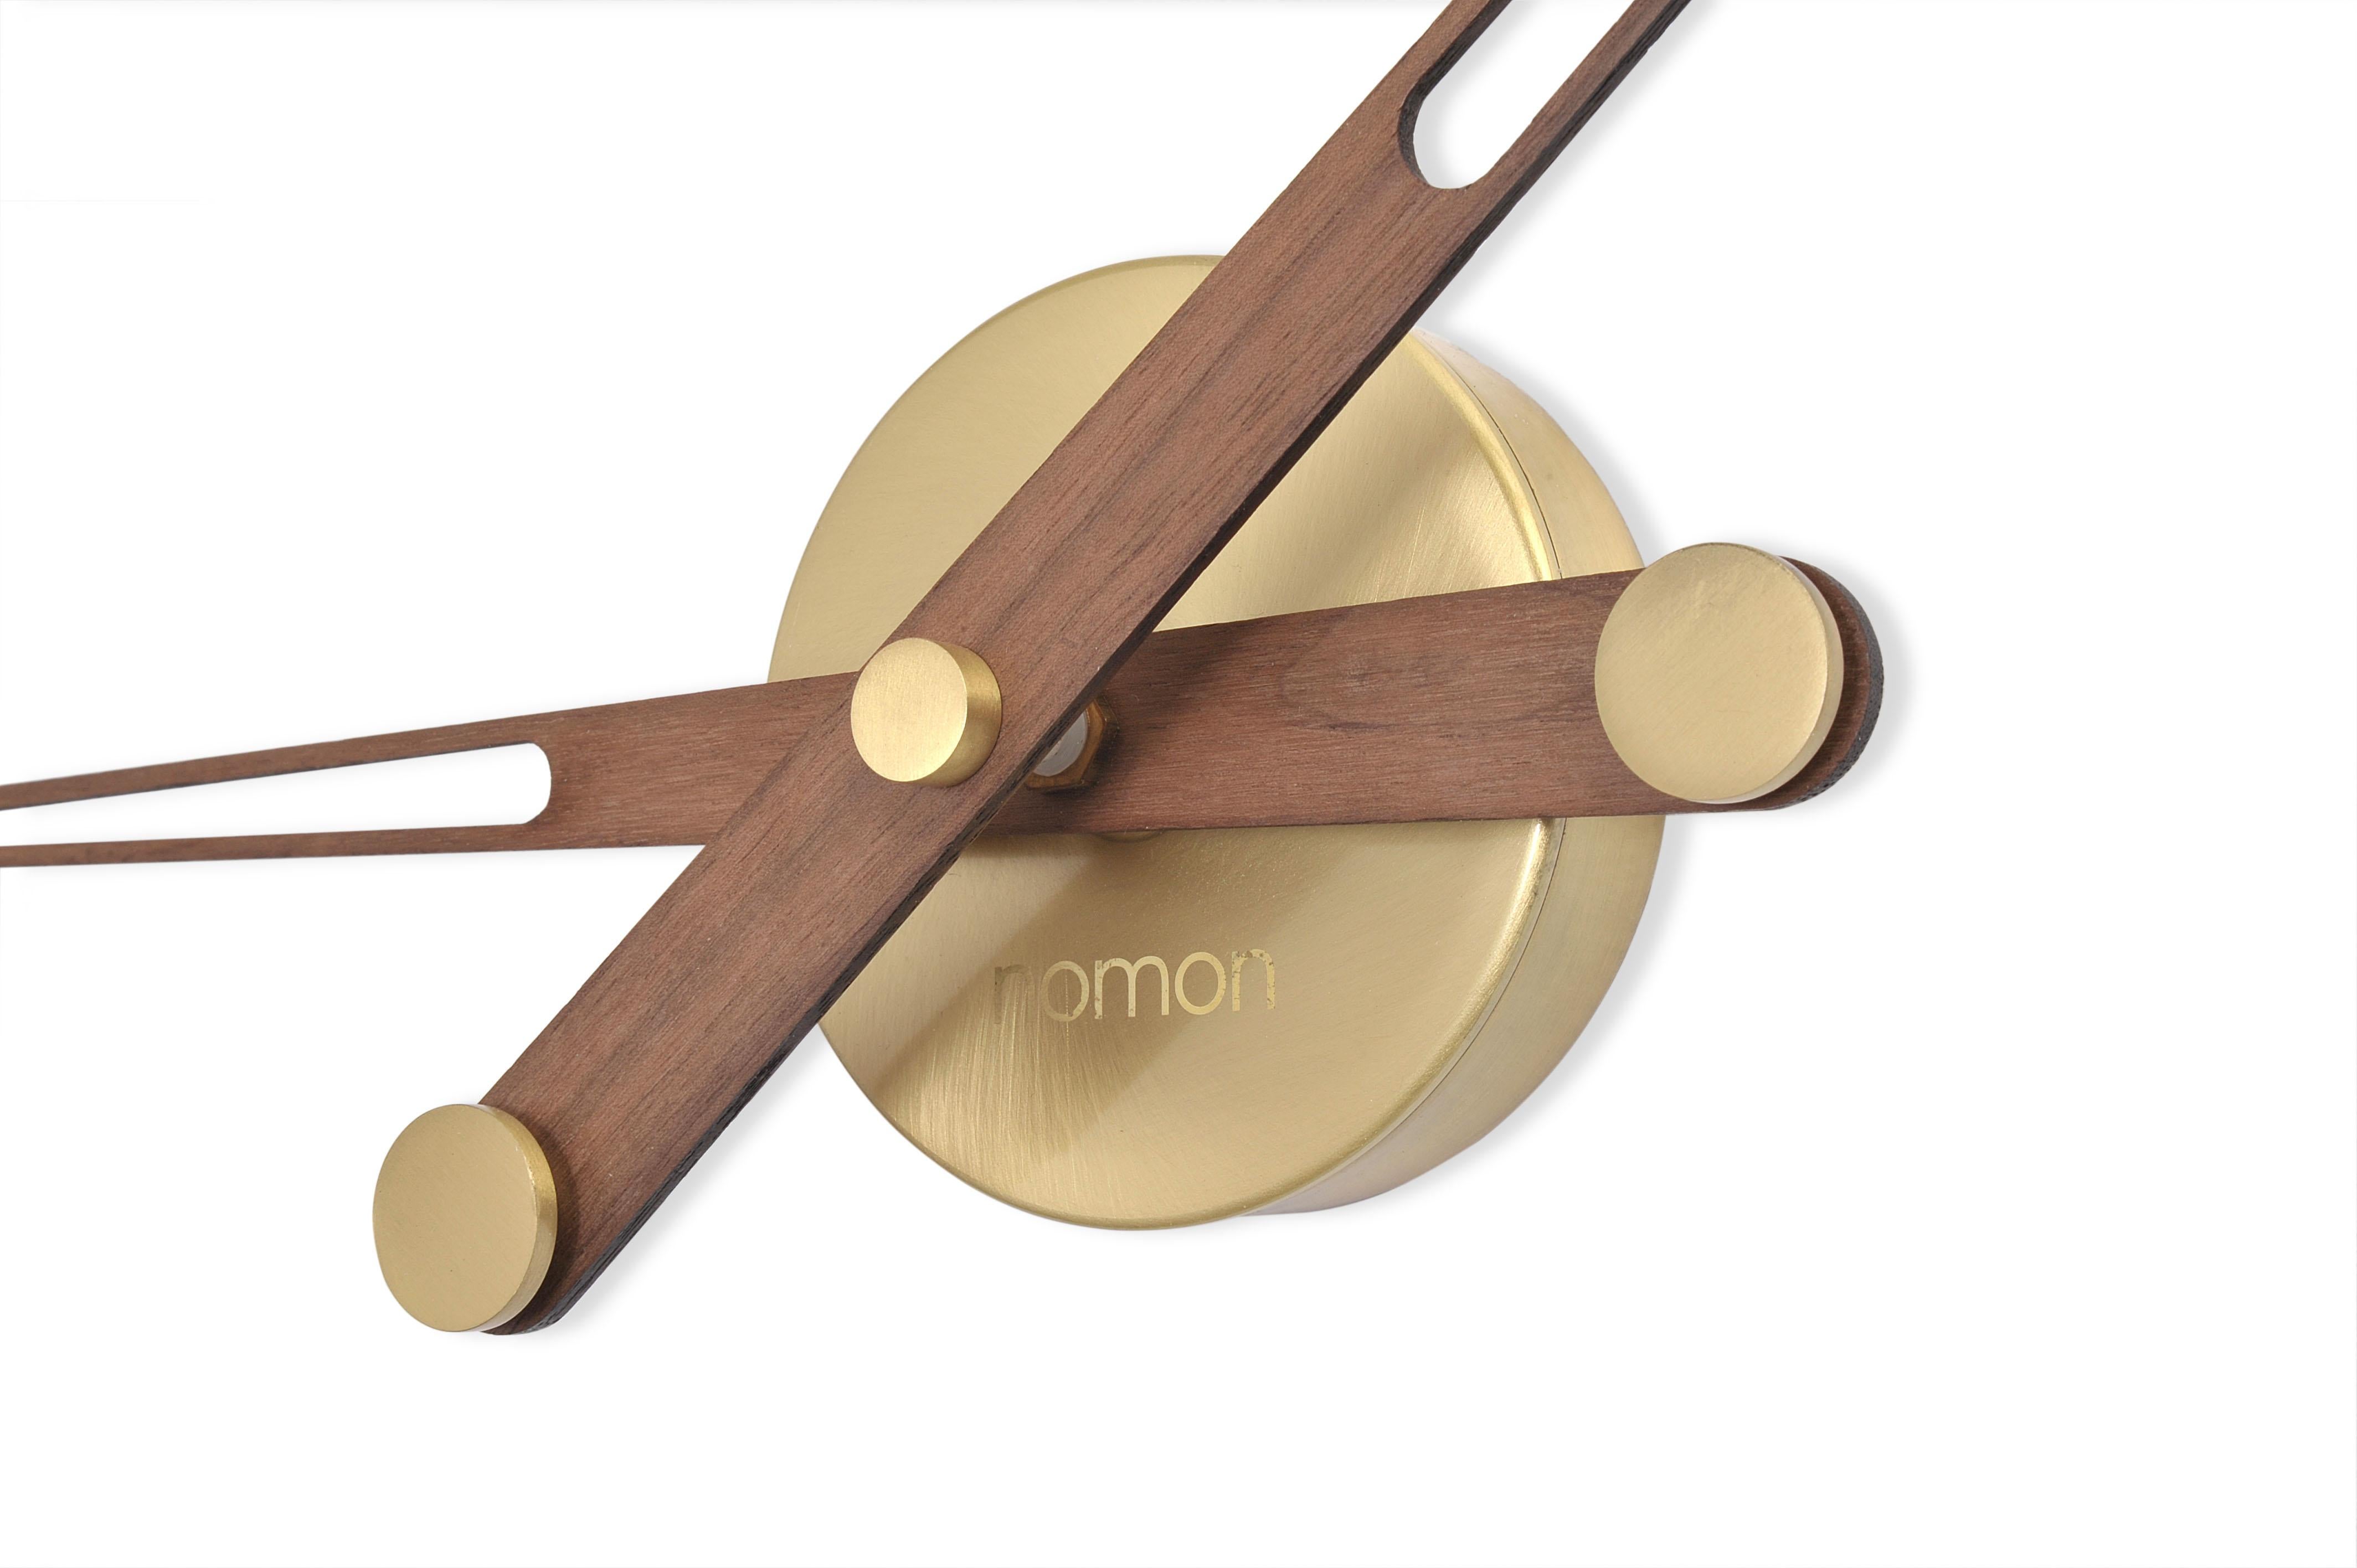 Avec un diamètre compris entre 74 et 100 cm, cette horloge est un modèle moderne avec des touches de bois qui transmettent un sentiment de chaleur et d'intimité. Une de ses particularités et ce qui le différencie des autres modèles est qu'il possède